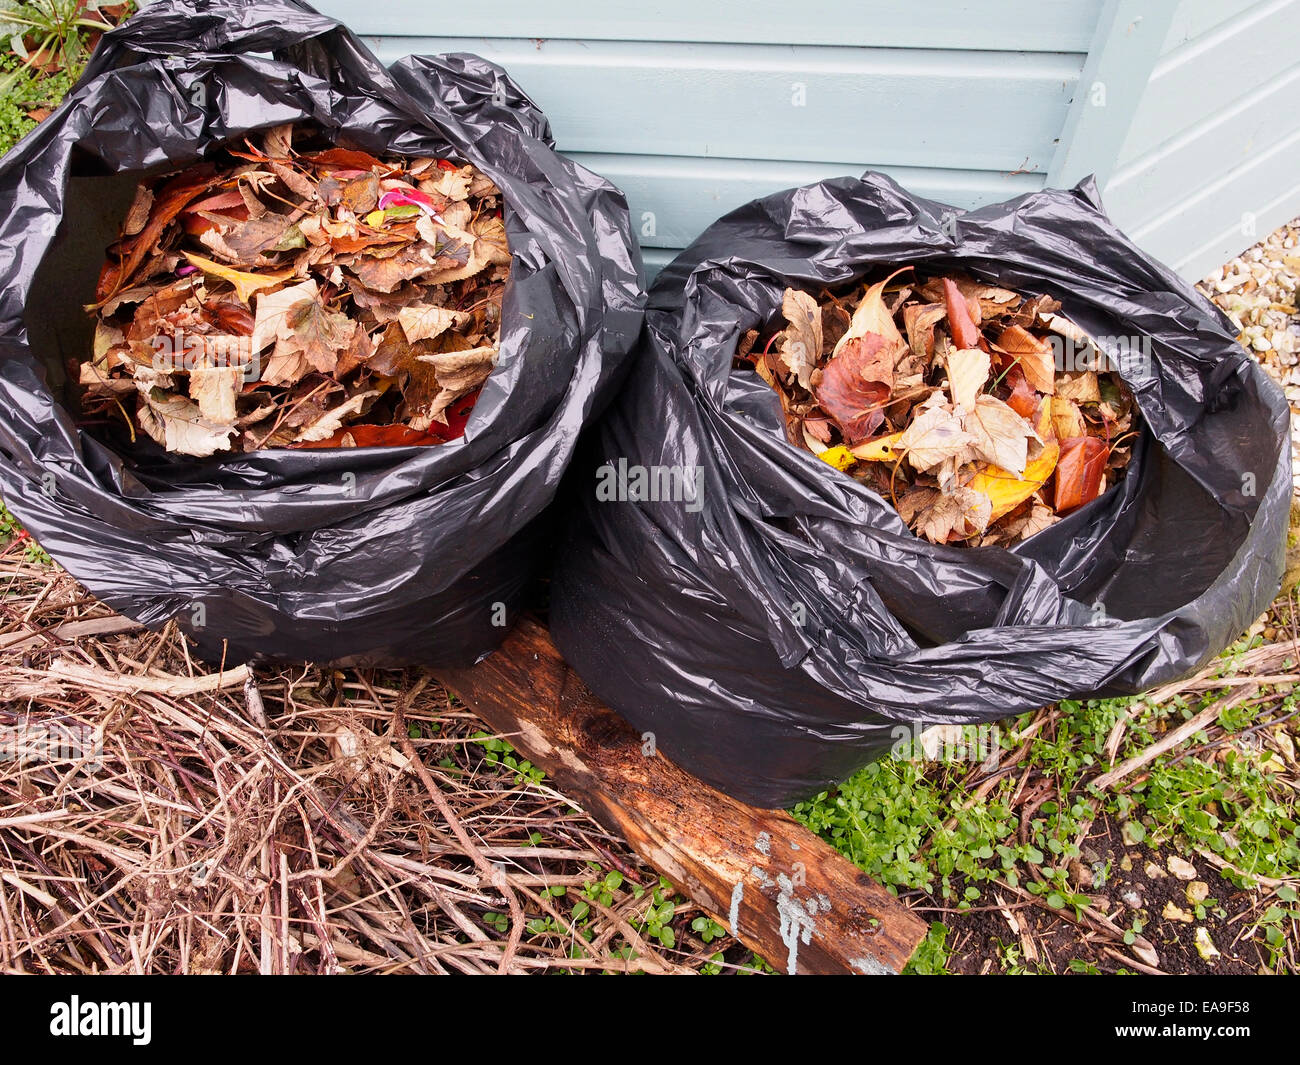 Bolsas de plástico negro lleno de muertos hojas de otoño, que se descomponen en la bolsa formando un molde de hojas útiles abonos de jardín Foto de stock